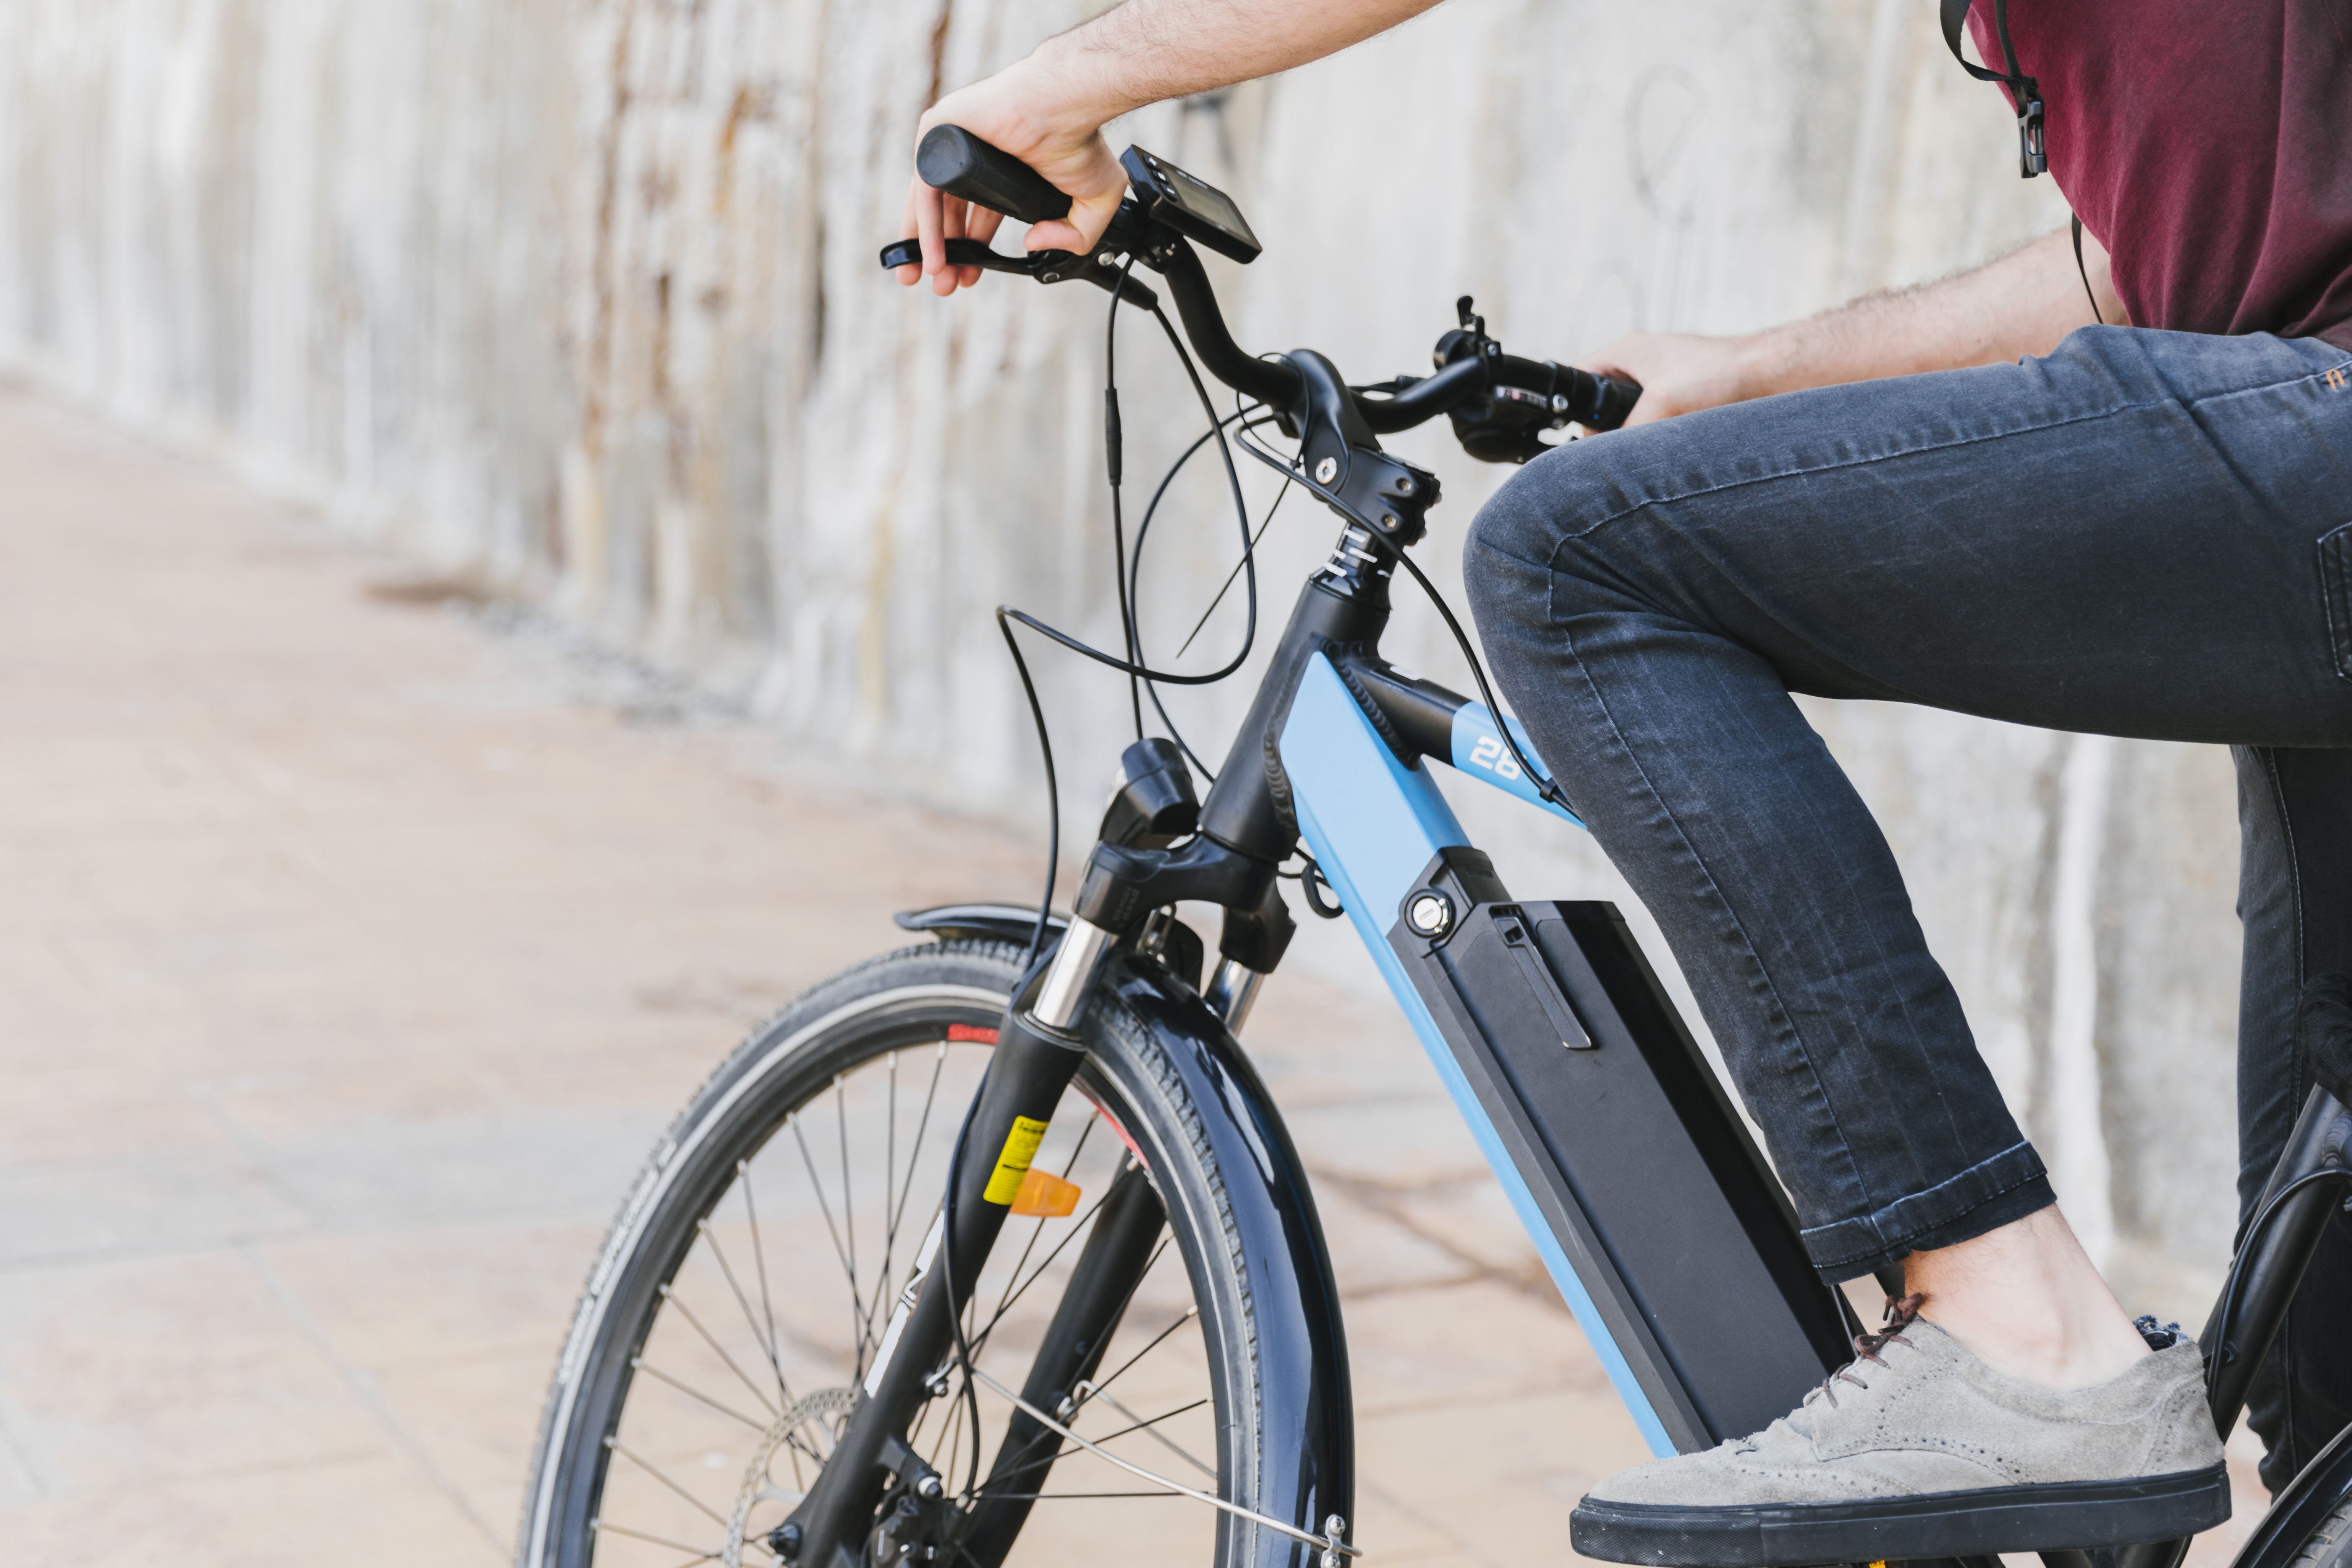 vleet Draak ongeluk E-bike accu levensduur: Verbeteren gemiddelde levensduur accu elektrische  fiets